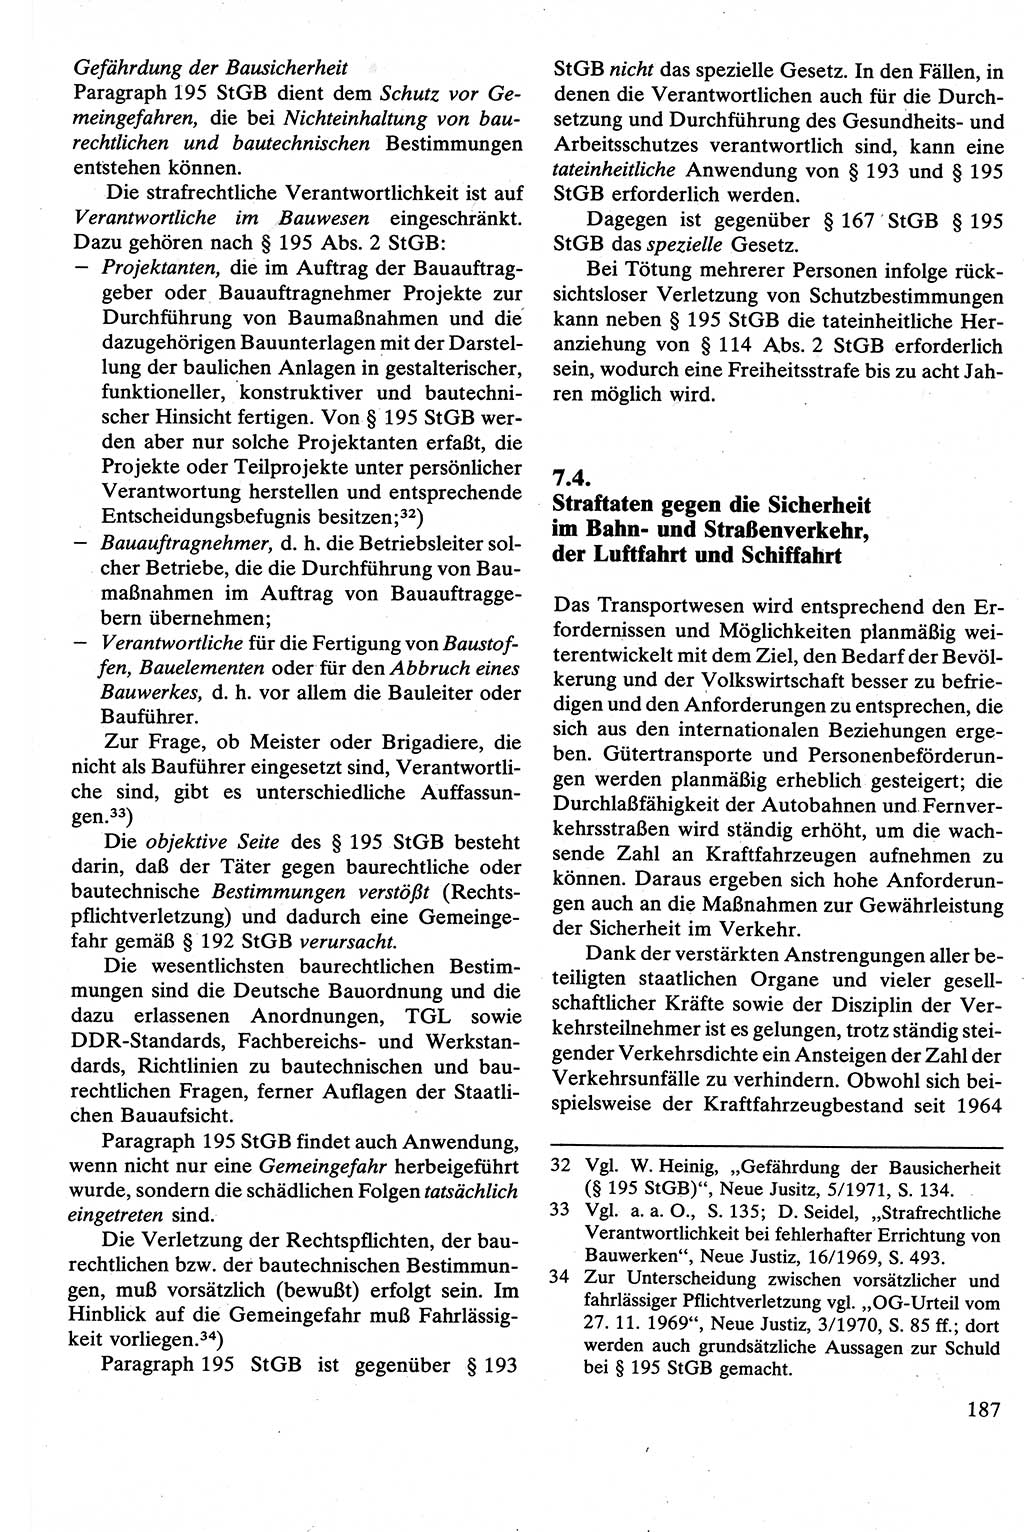 Strafrecht [Deutsche Demokratische Republik (DDR)], Besonderer Teil, Lehrbuch 1981, Seite 187 (Strafr. DDR BT Lb. 1981, S. 187)